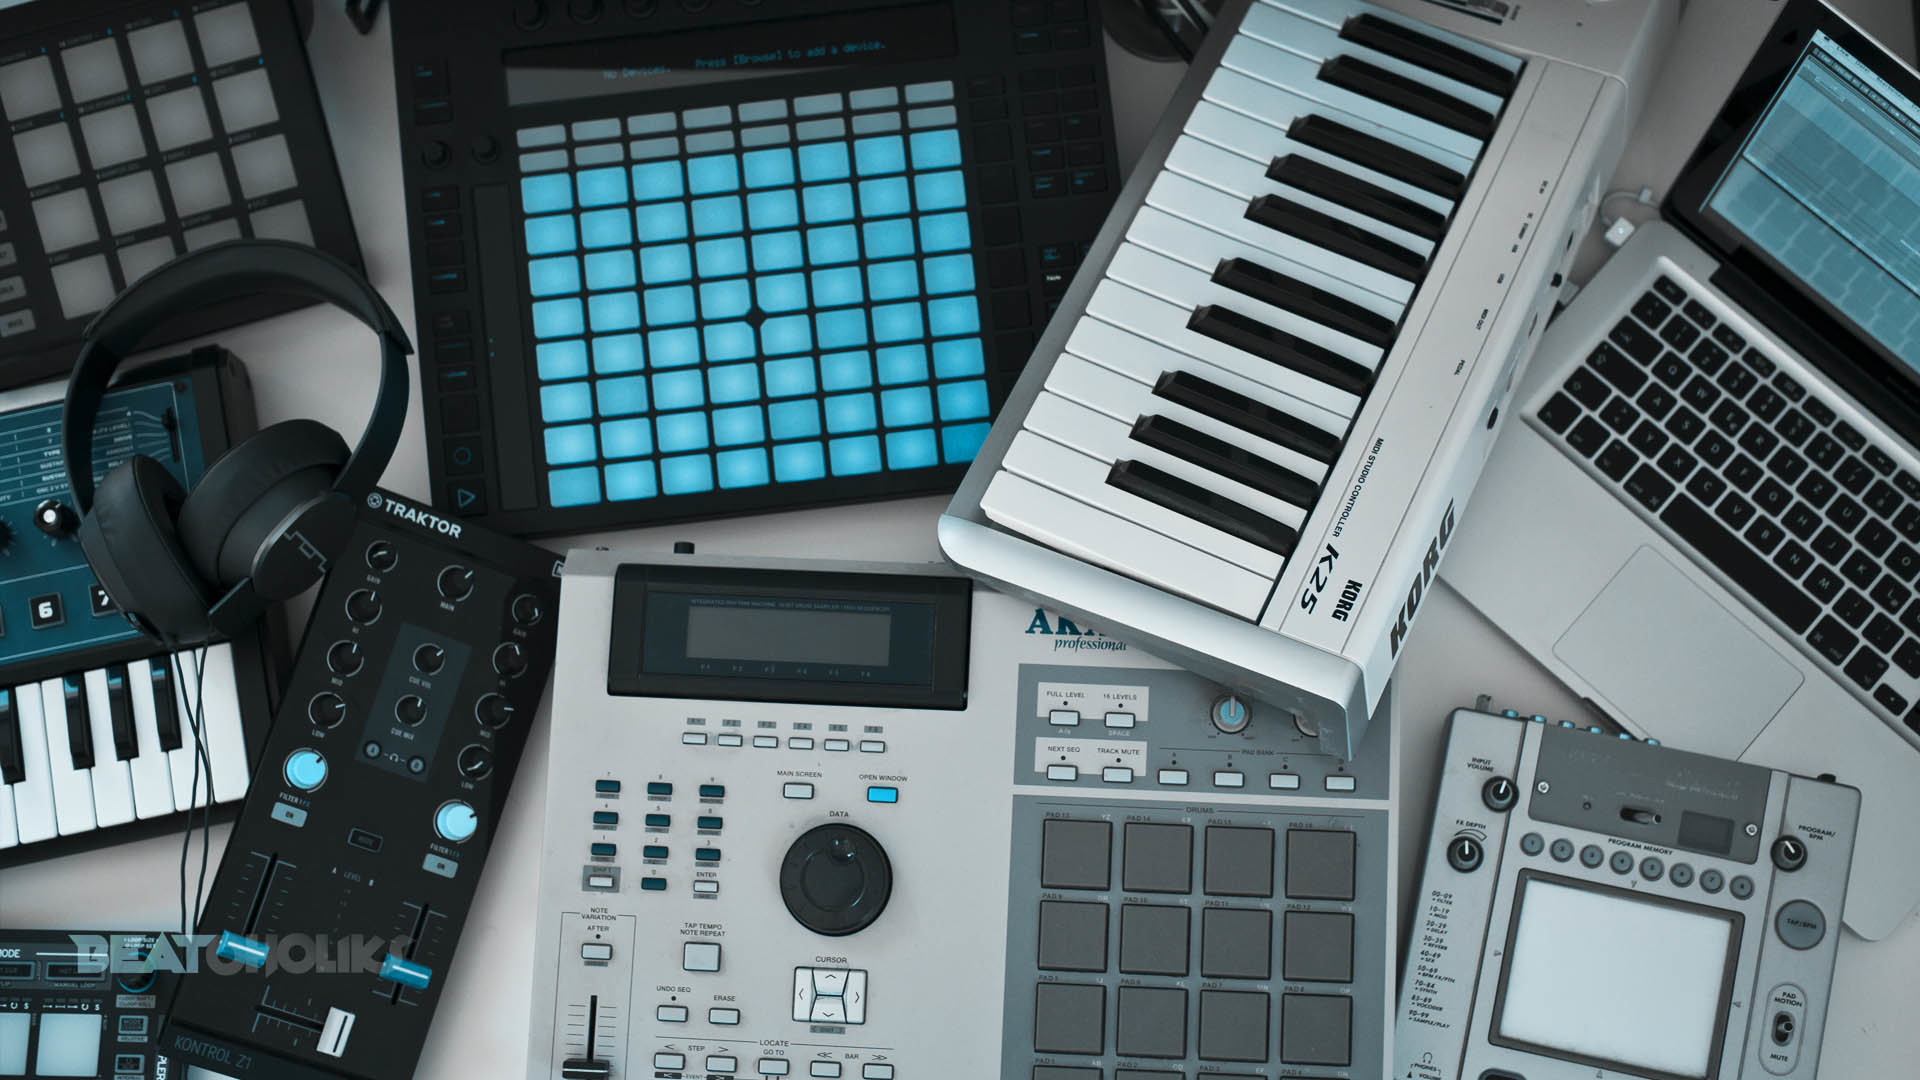 productor musical fondo de pantalla,instrumento musical electronico,tecnología,estación de trabajo musical,teclado electrónico,teclado musical